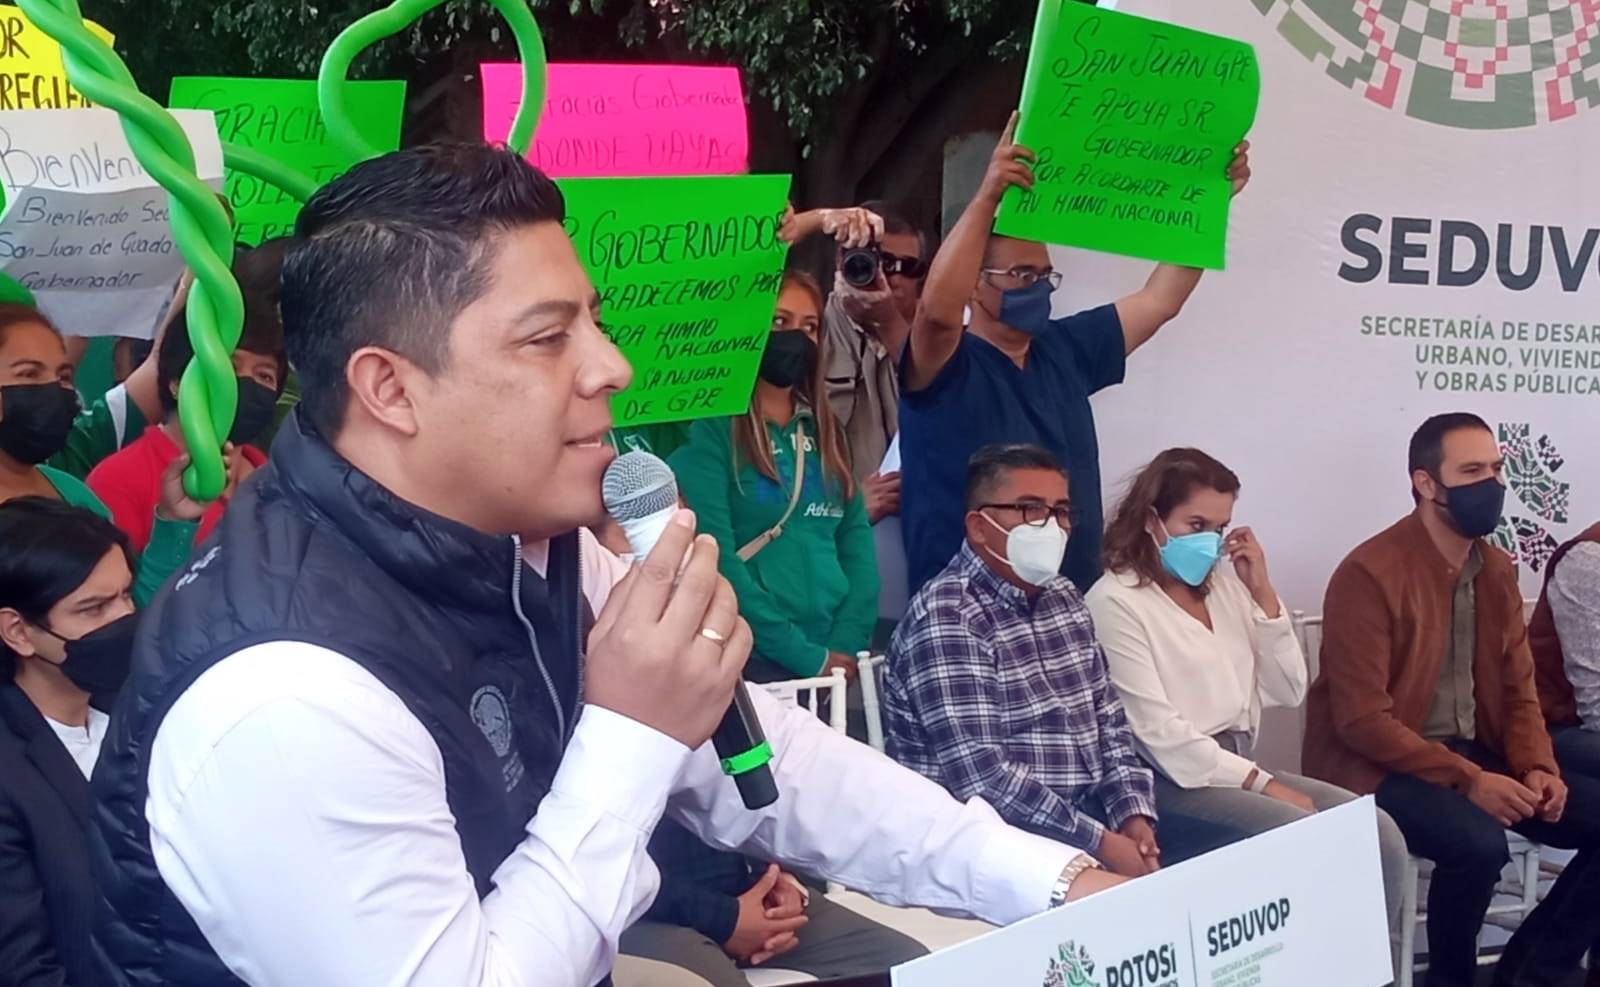 Da Gallardo banderazo a obras de rehabilitación de Himno Nacional; vecinos le piden salvar árboles